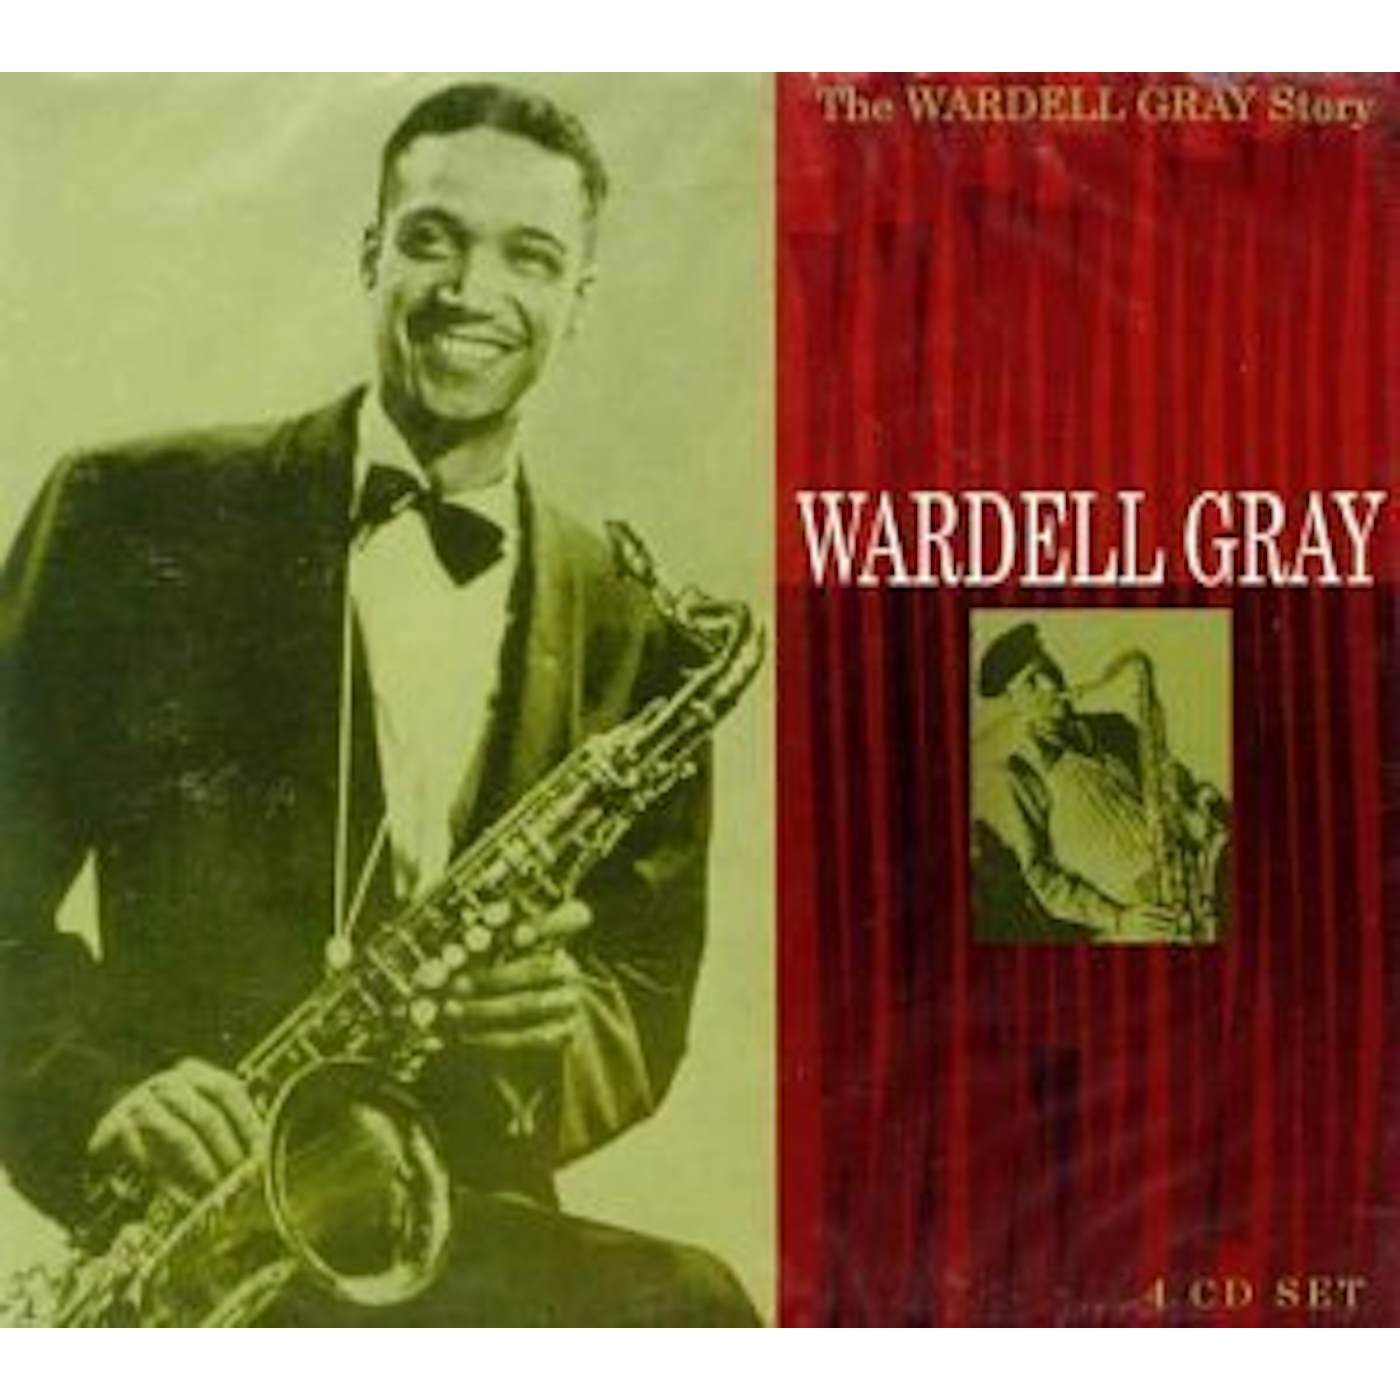 WARDELL GRAY STORY CD